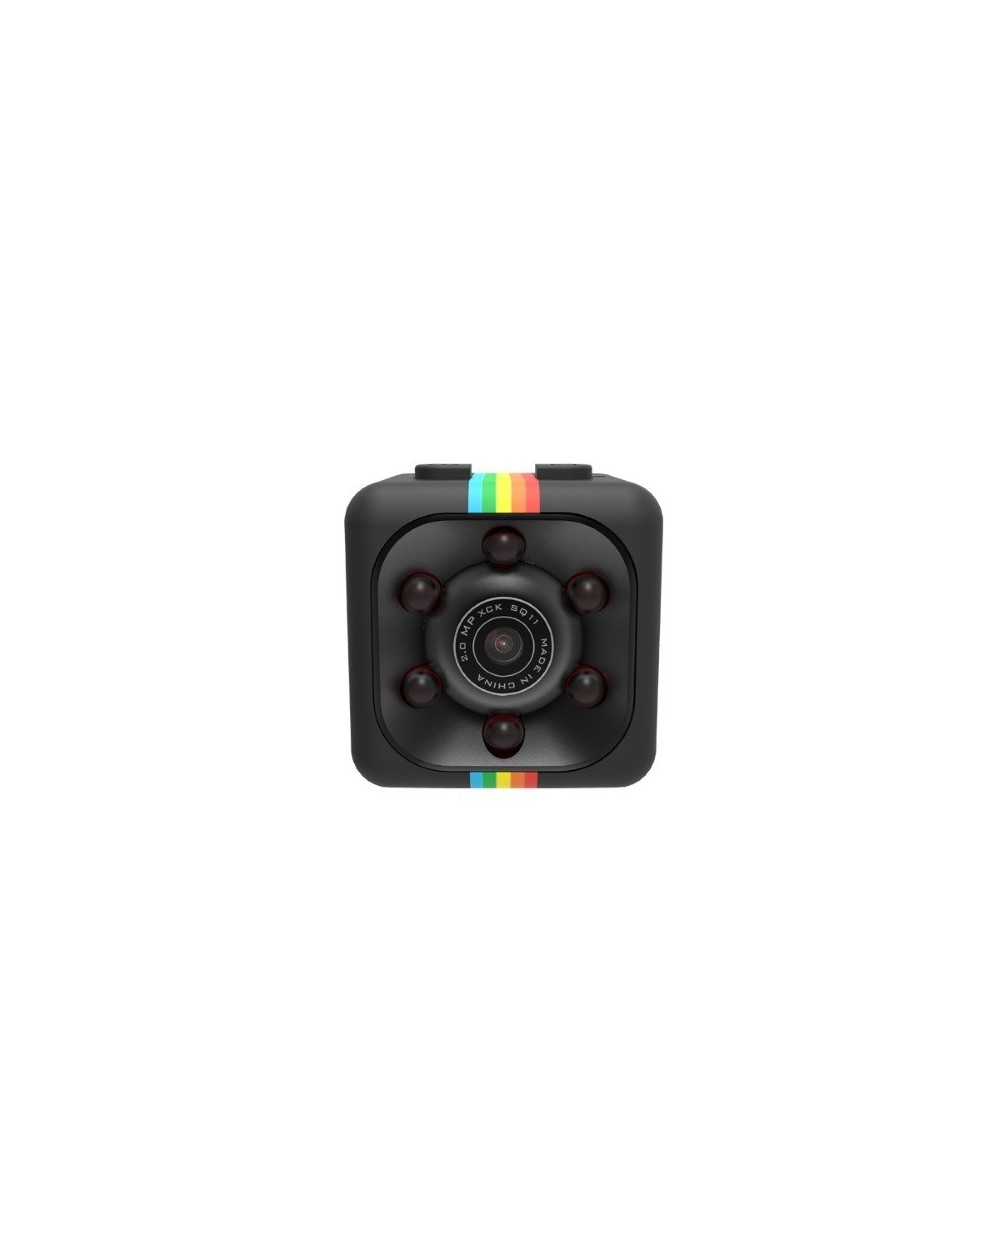 SQ11 mini camera καταγραφής με βραχίονα & νυχτερινές λήψεις-full HD1080P